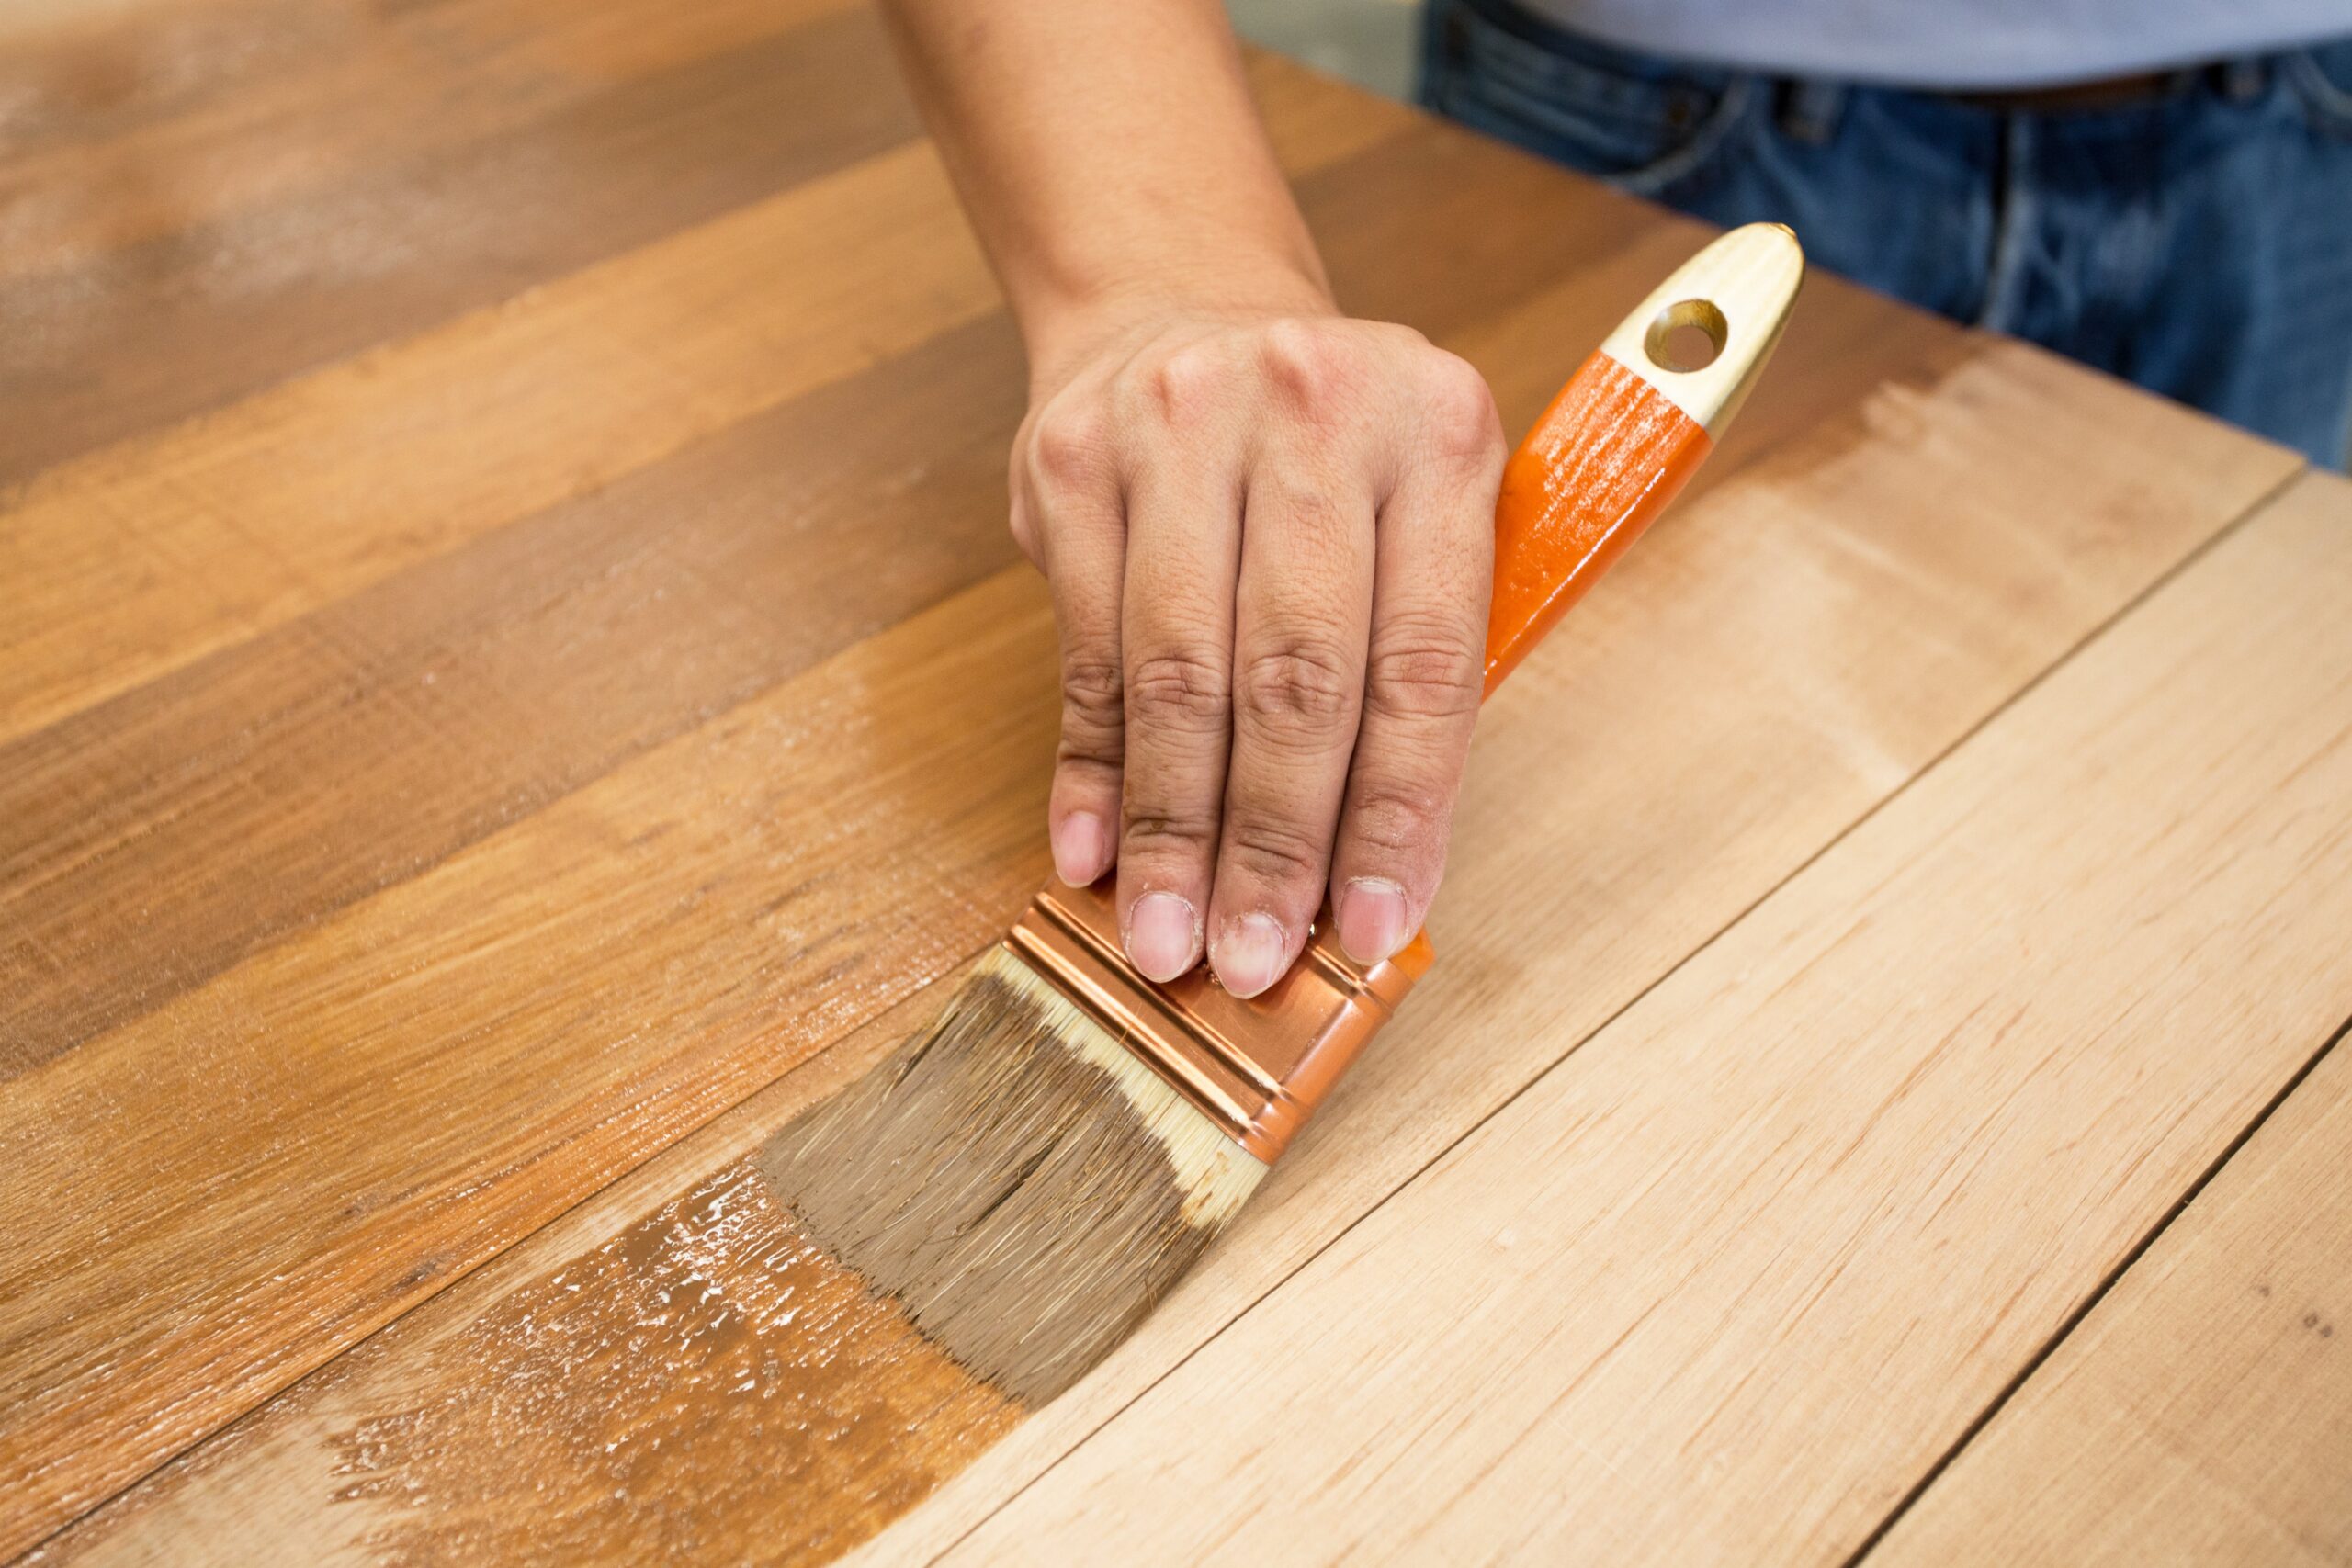 Φινίρισμα ξύλου – Τι πρέπει να γνωρίζετε